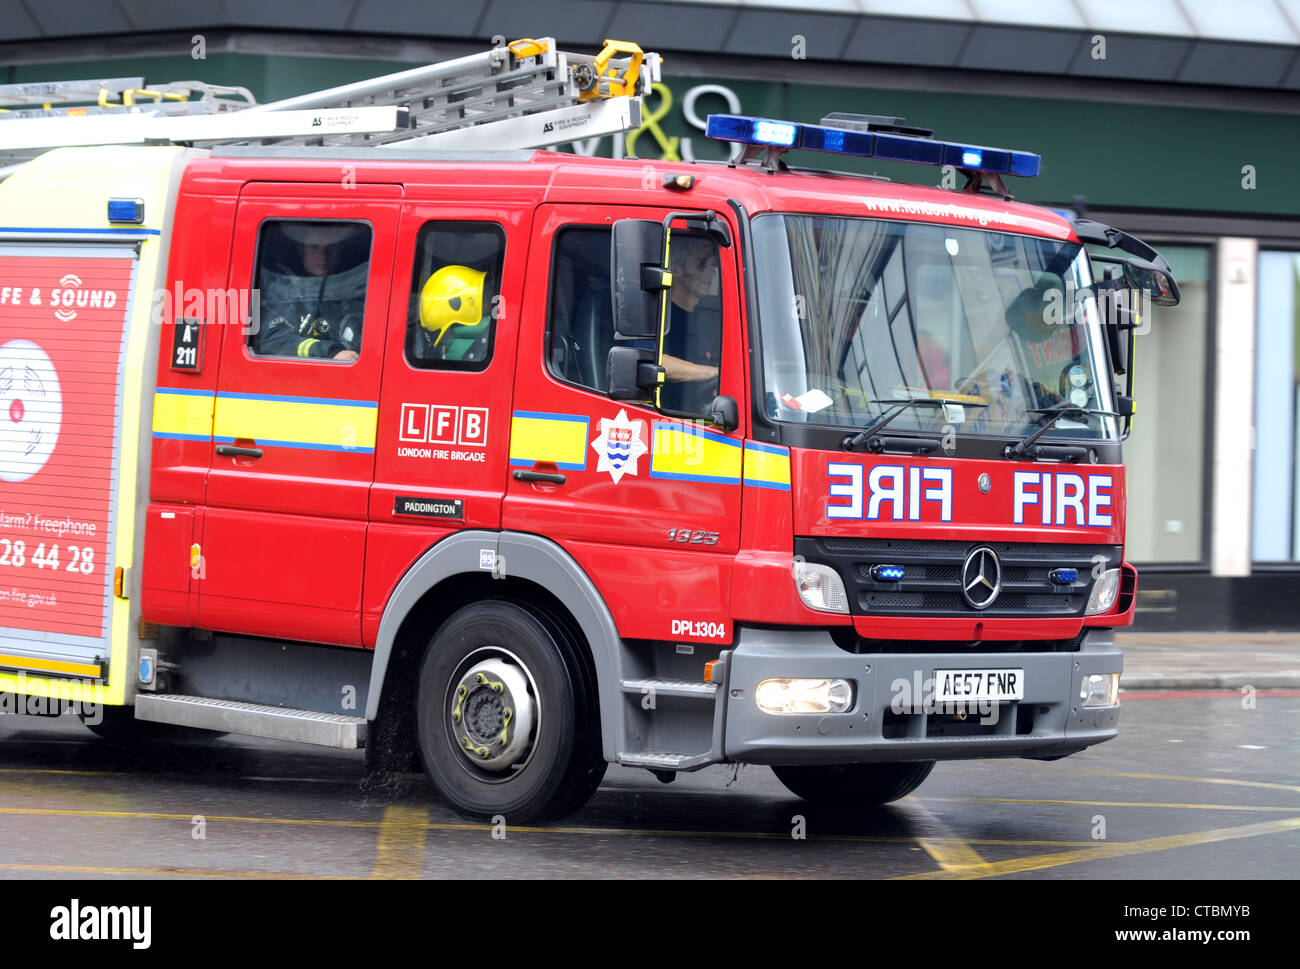 Fire Engine, London Fire Brigade de pompiers, Londres, Angleterre, Royaume-Uni Banque D'Images